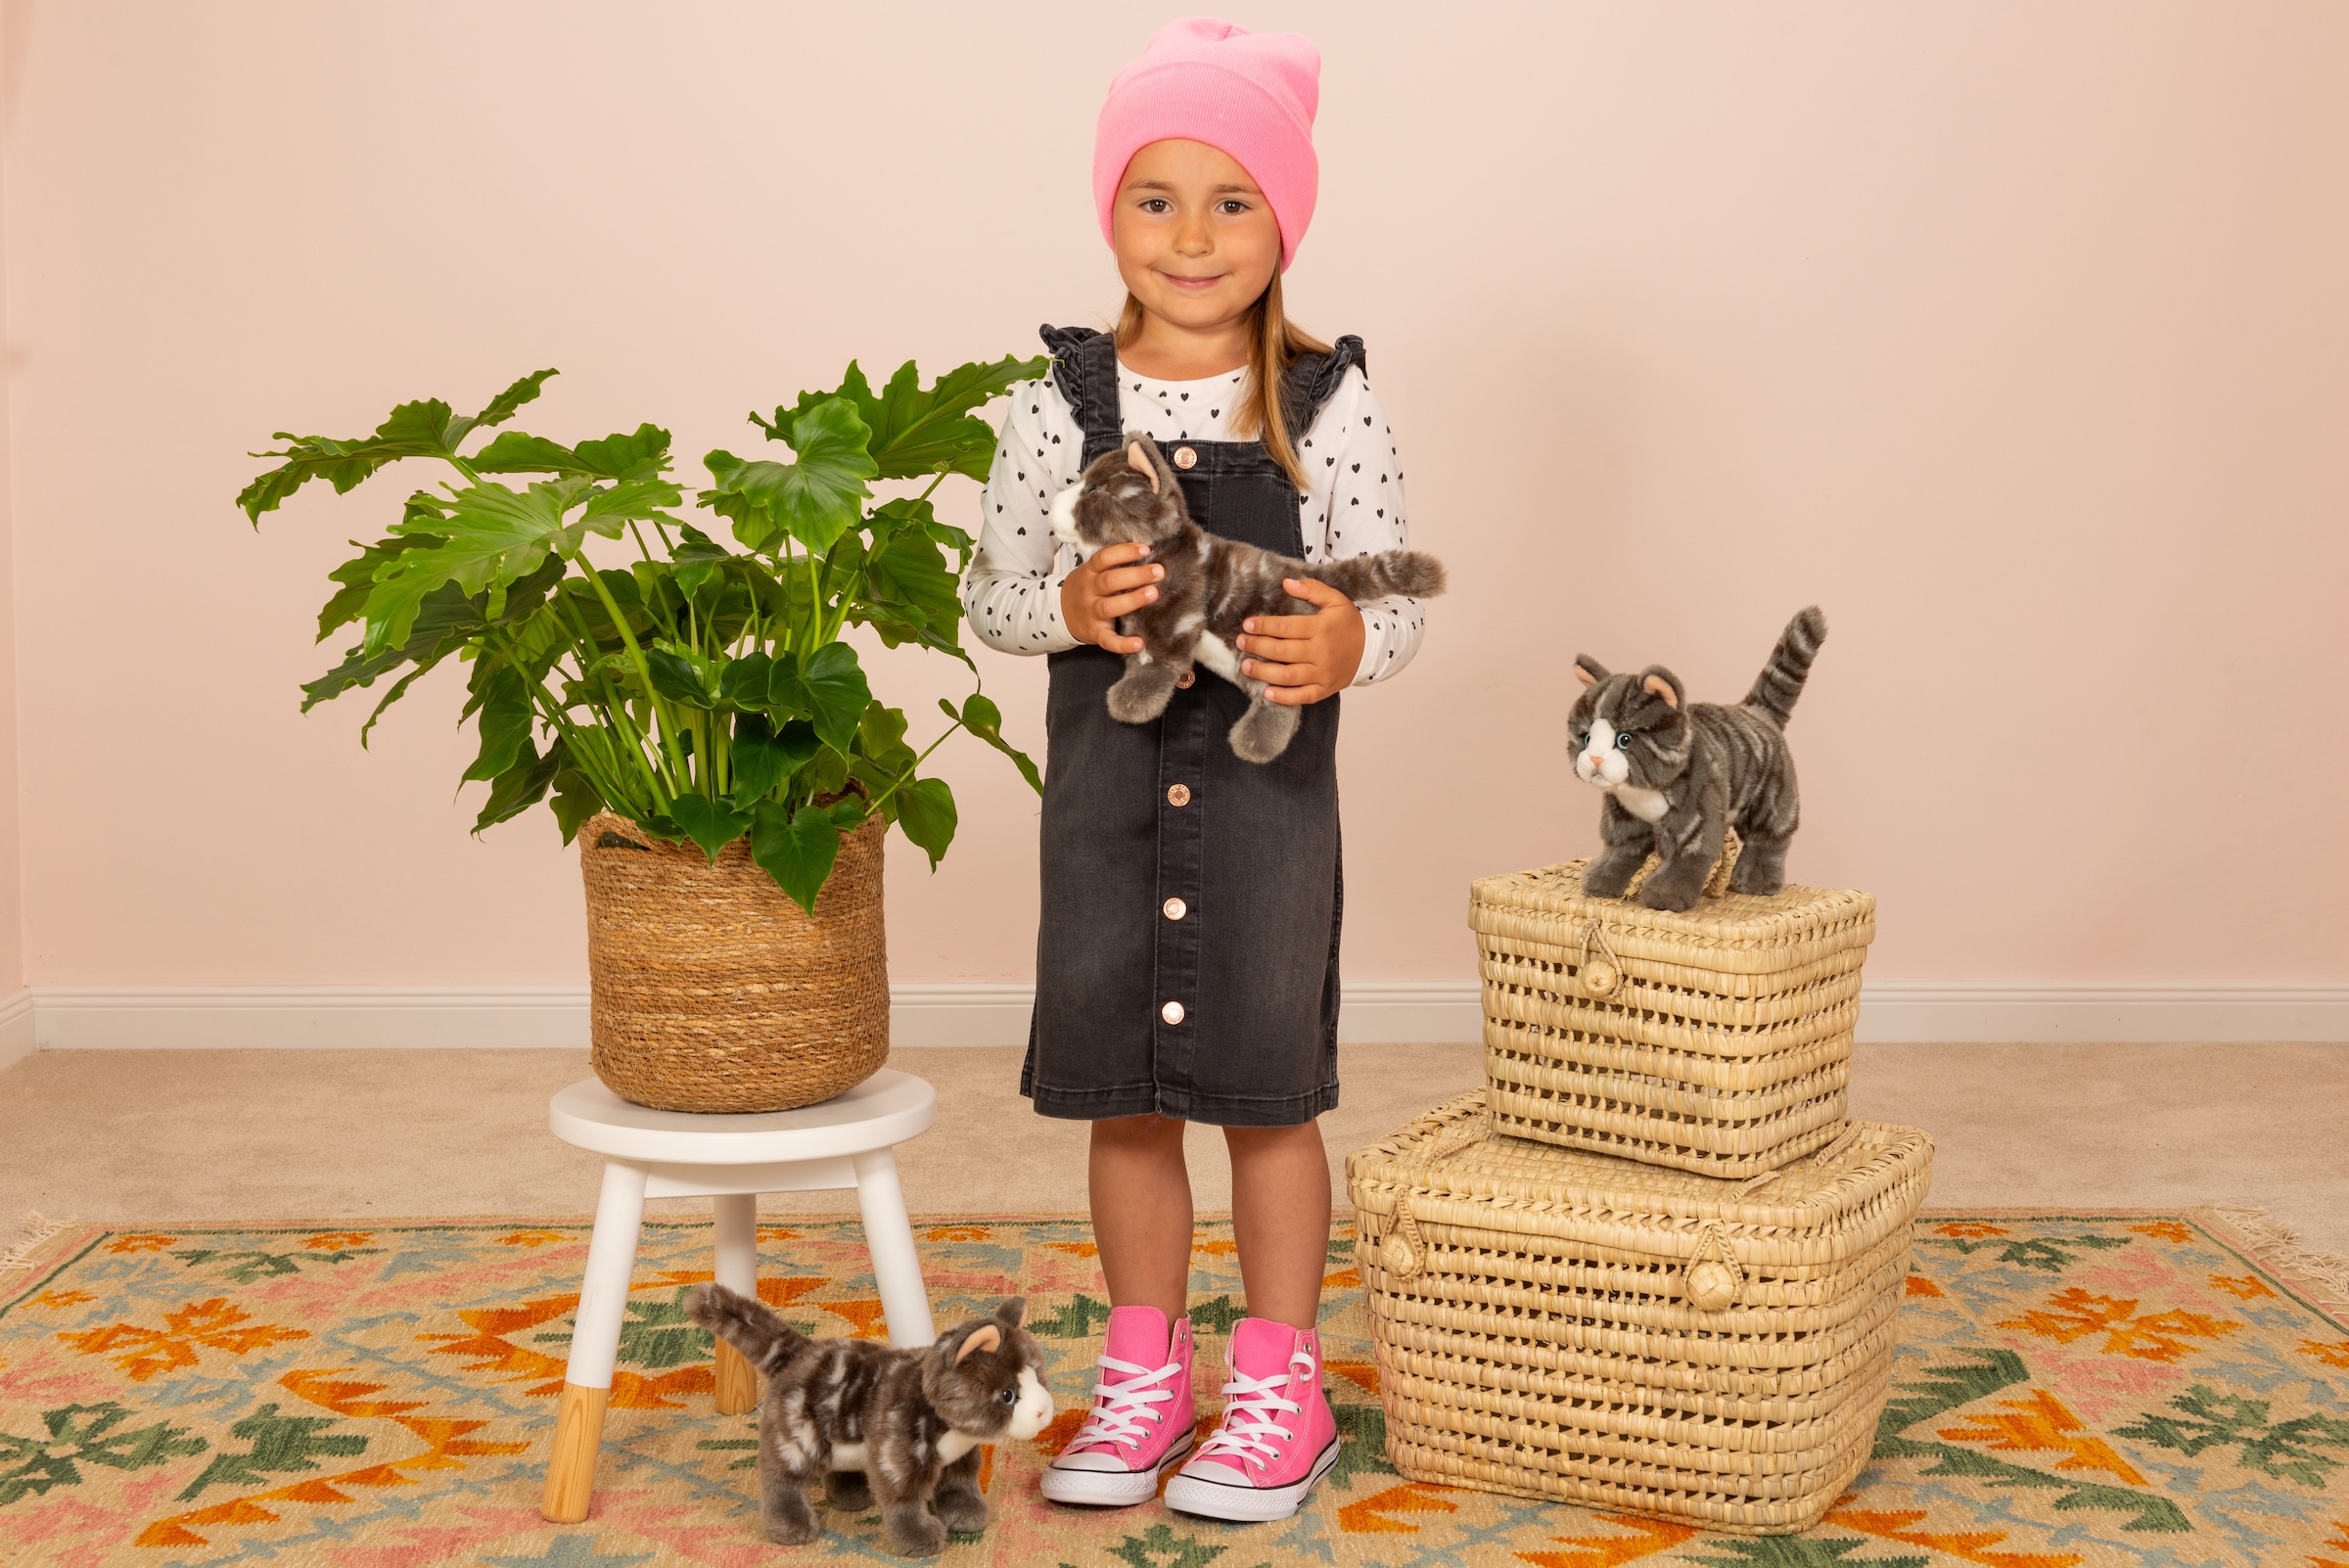 Teddy Hermann® Kuscheltier »Katze stehend grau getigert, 20 cm«, zum Teil aus recyceltem Material